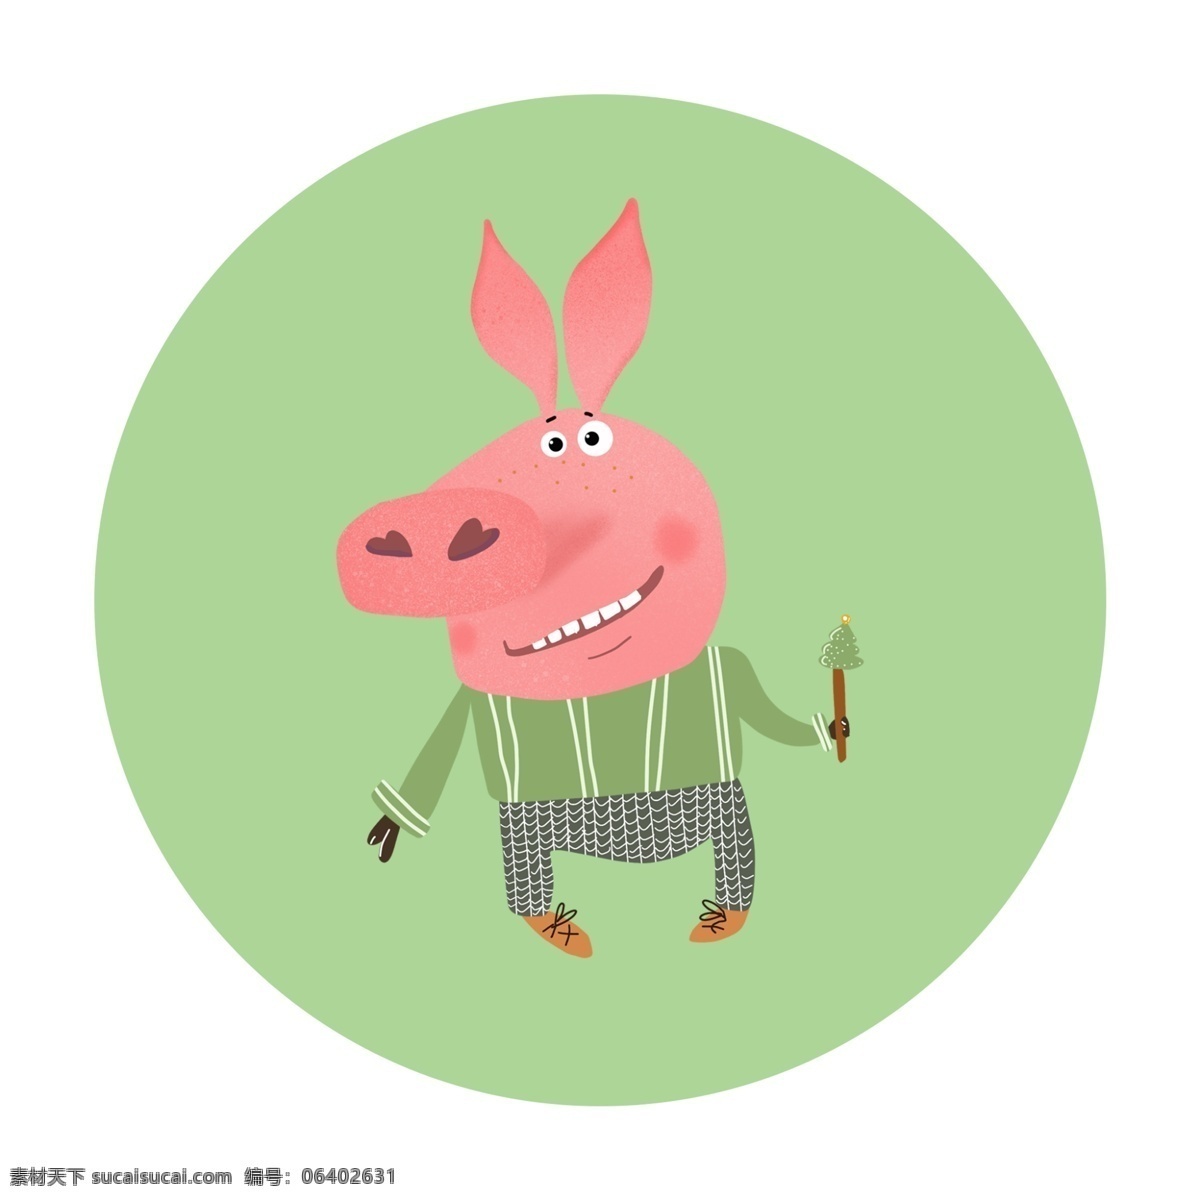 原创 手绘 可爱 卡通 小 猪 元素 小猪元素 插画 儿童画 幼儿园素材 手绘小猪